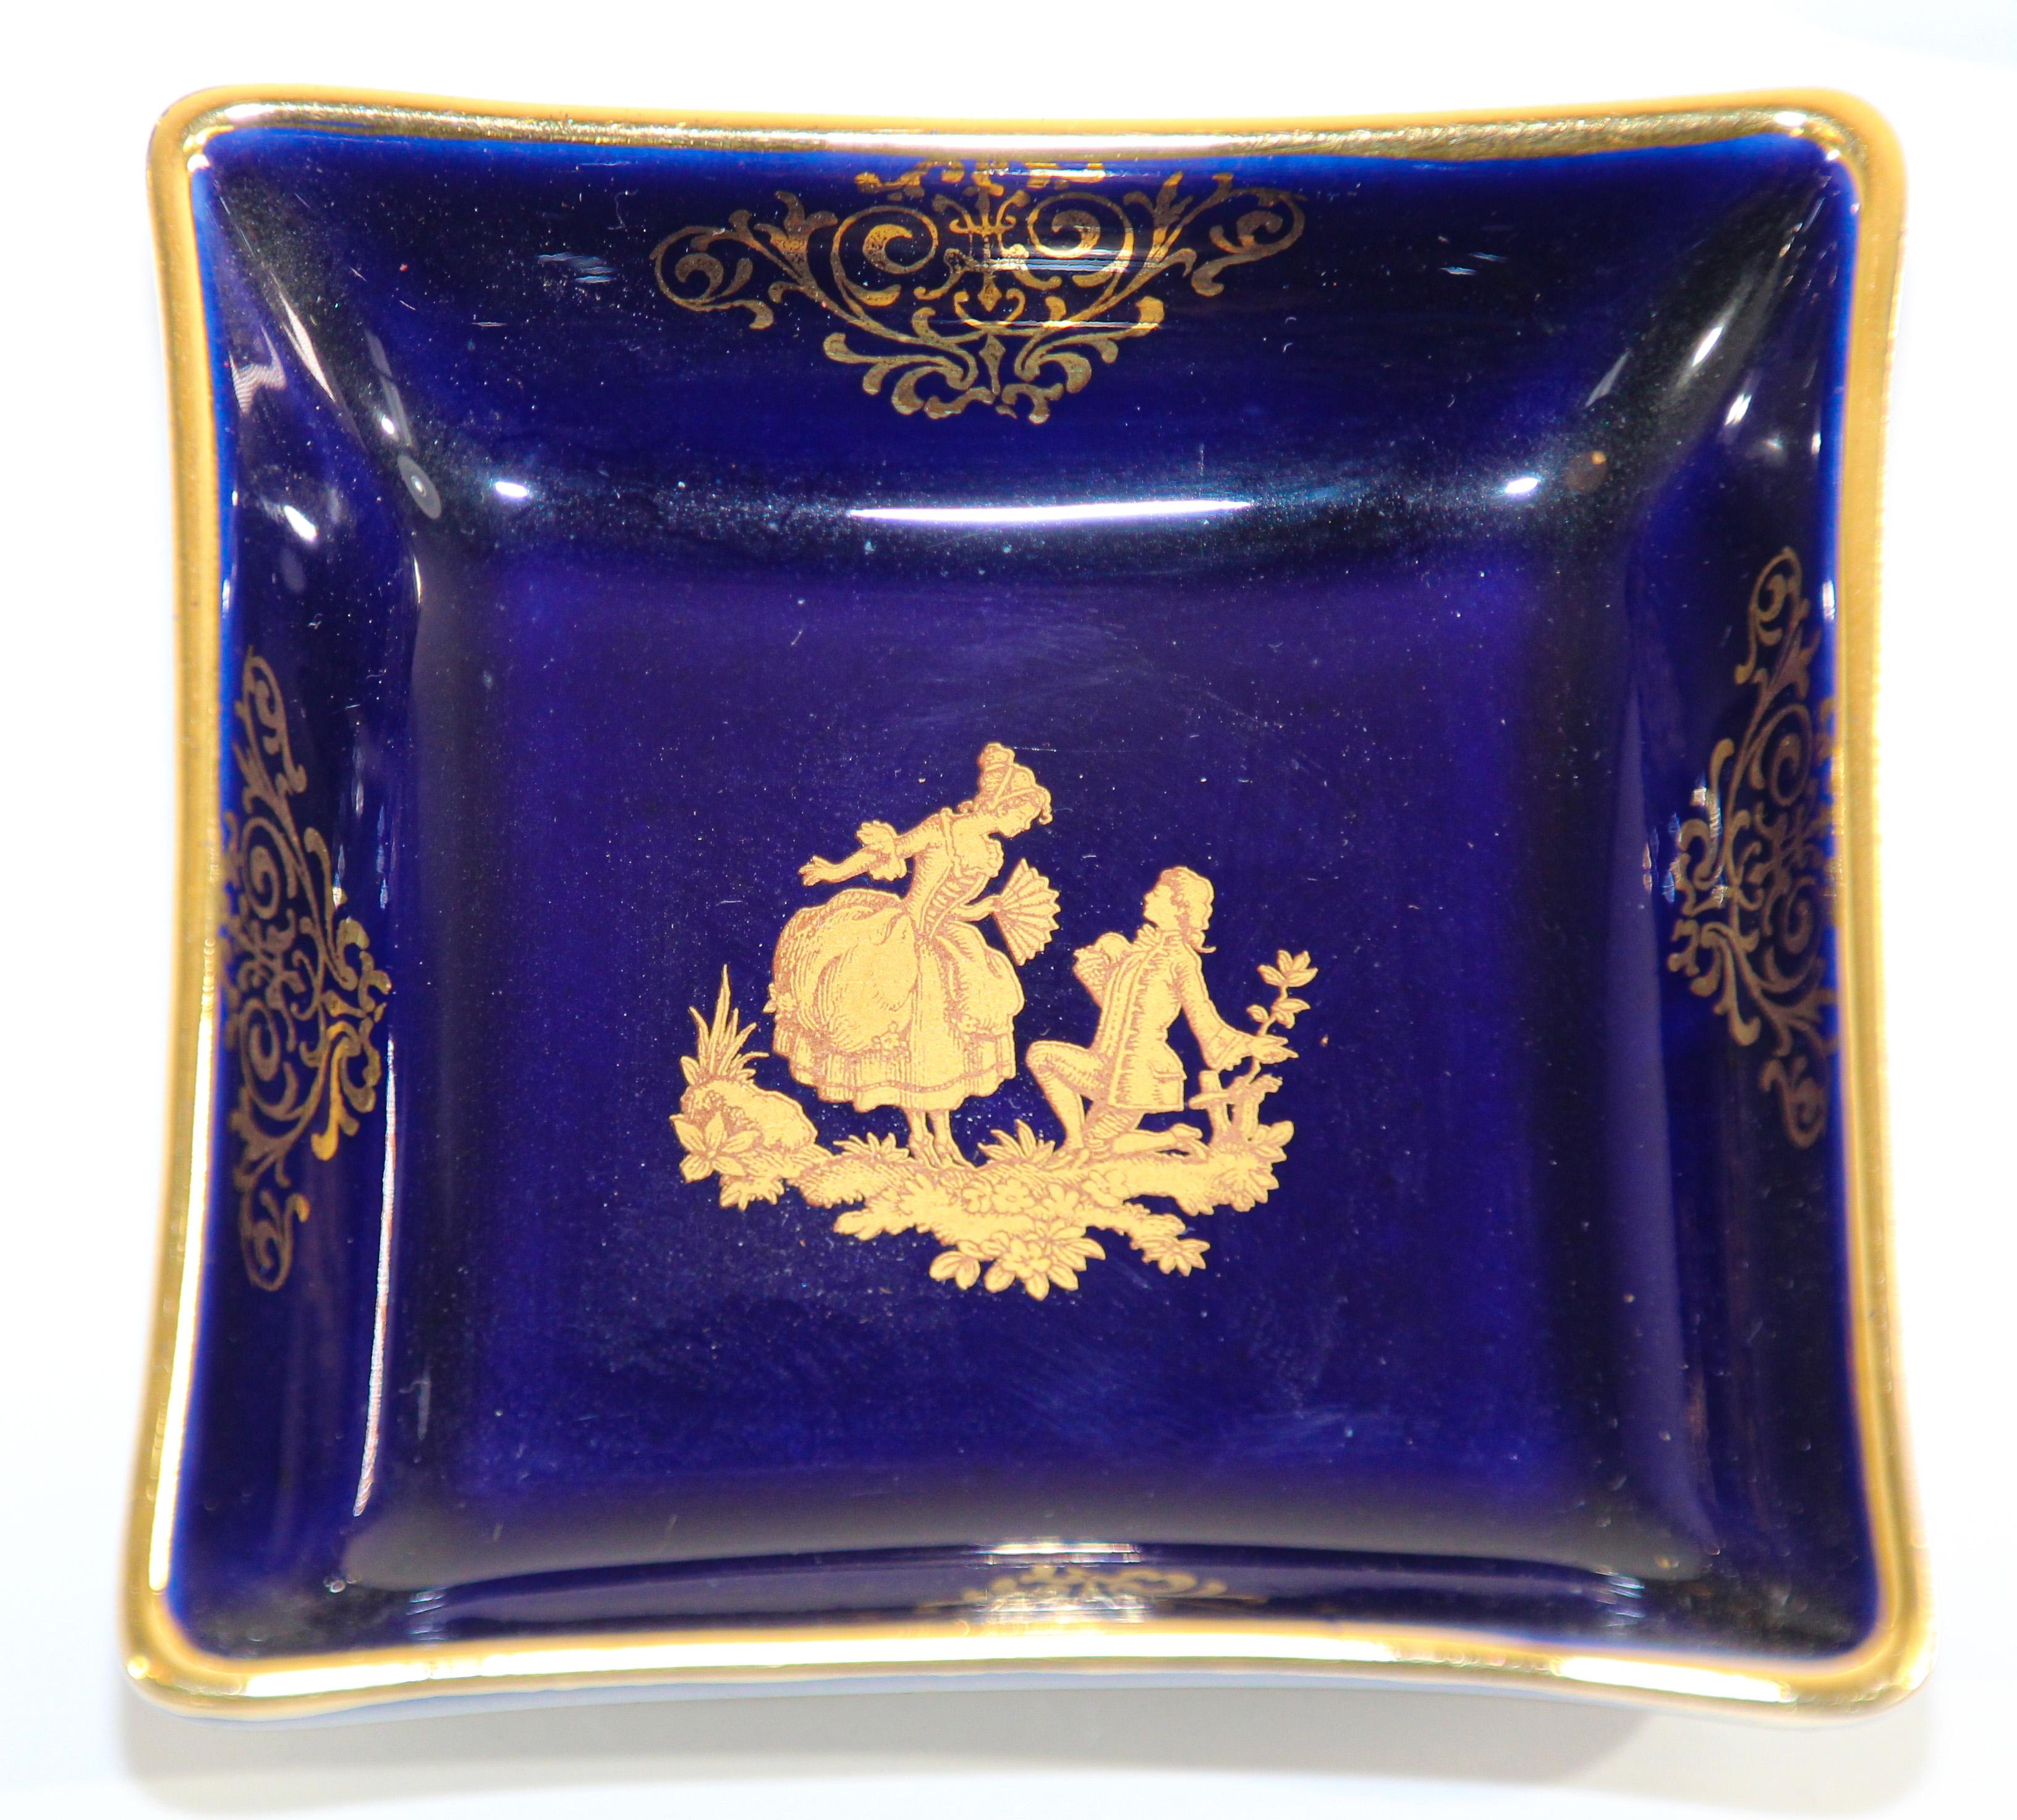 limoges porcelain cobalt blue and gold